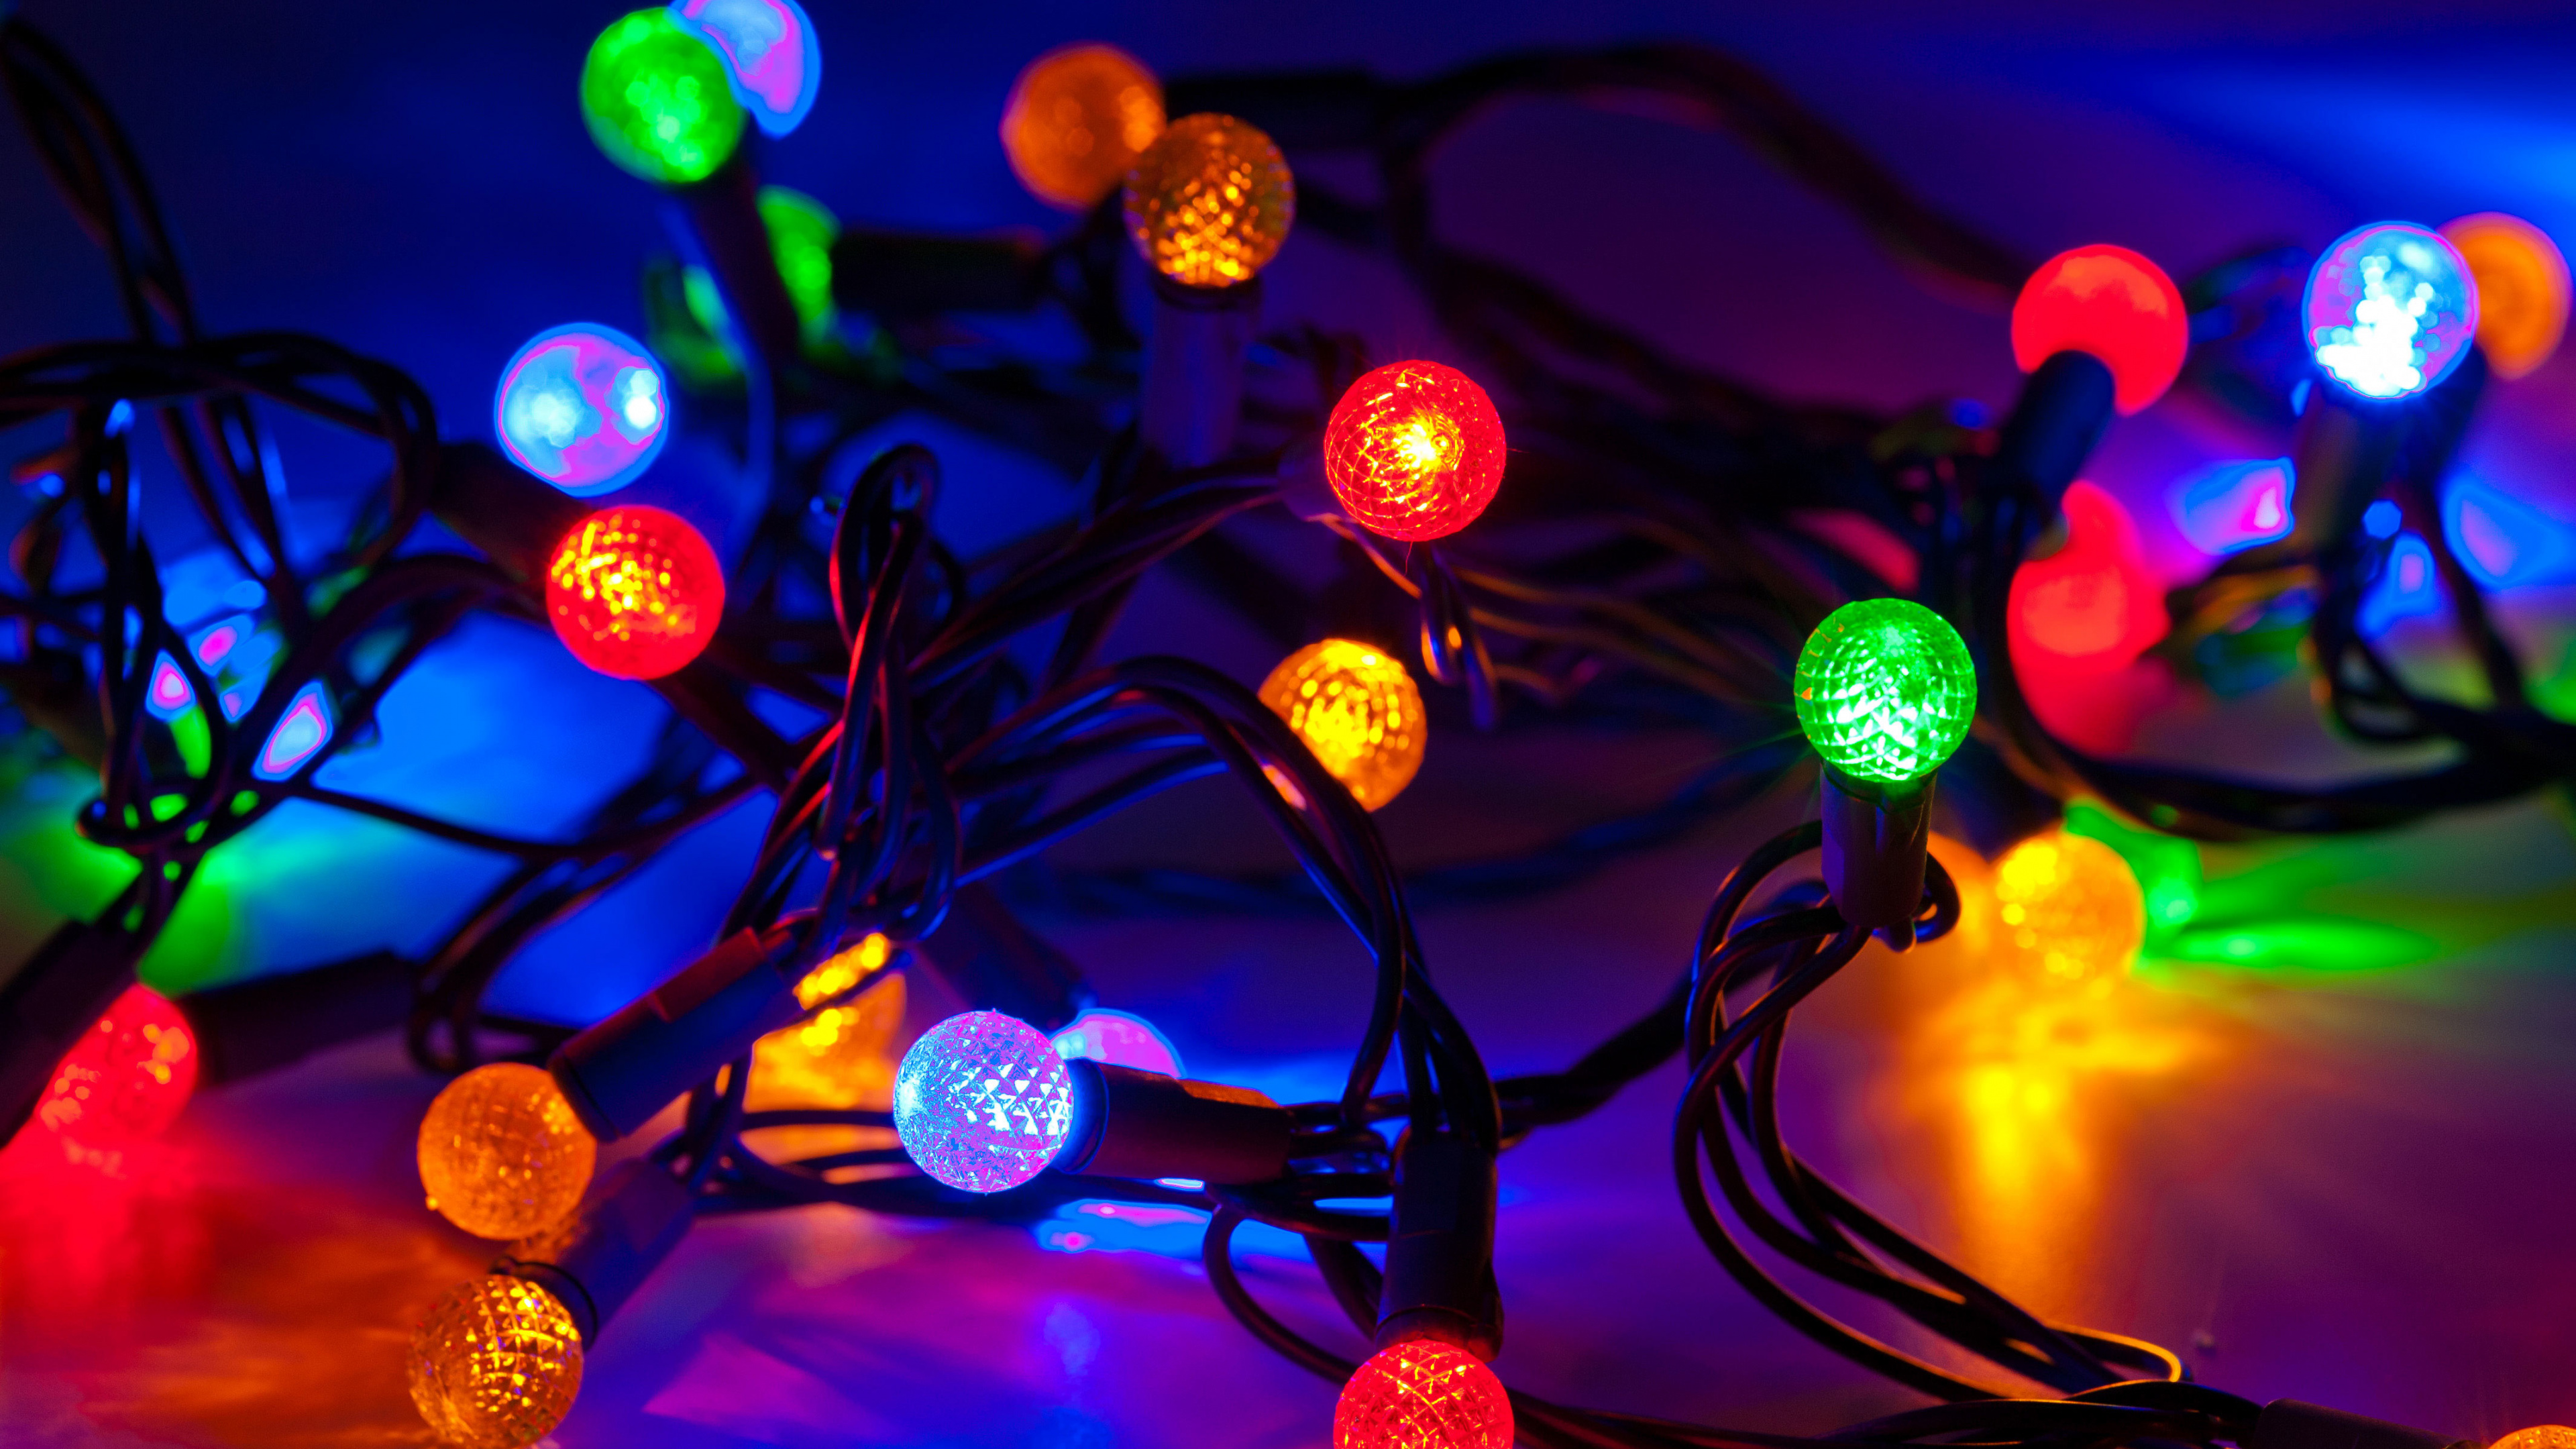 Weihnachtsbeleuchtung, Weihnachten, Licht, Weihnachtsdekoration, Leuchtdiode. Wallpaper in 3840x2160 Resolution